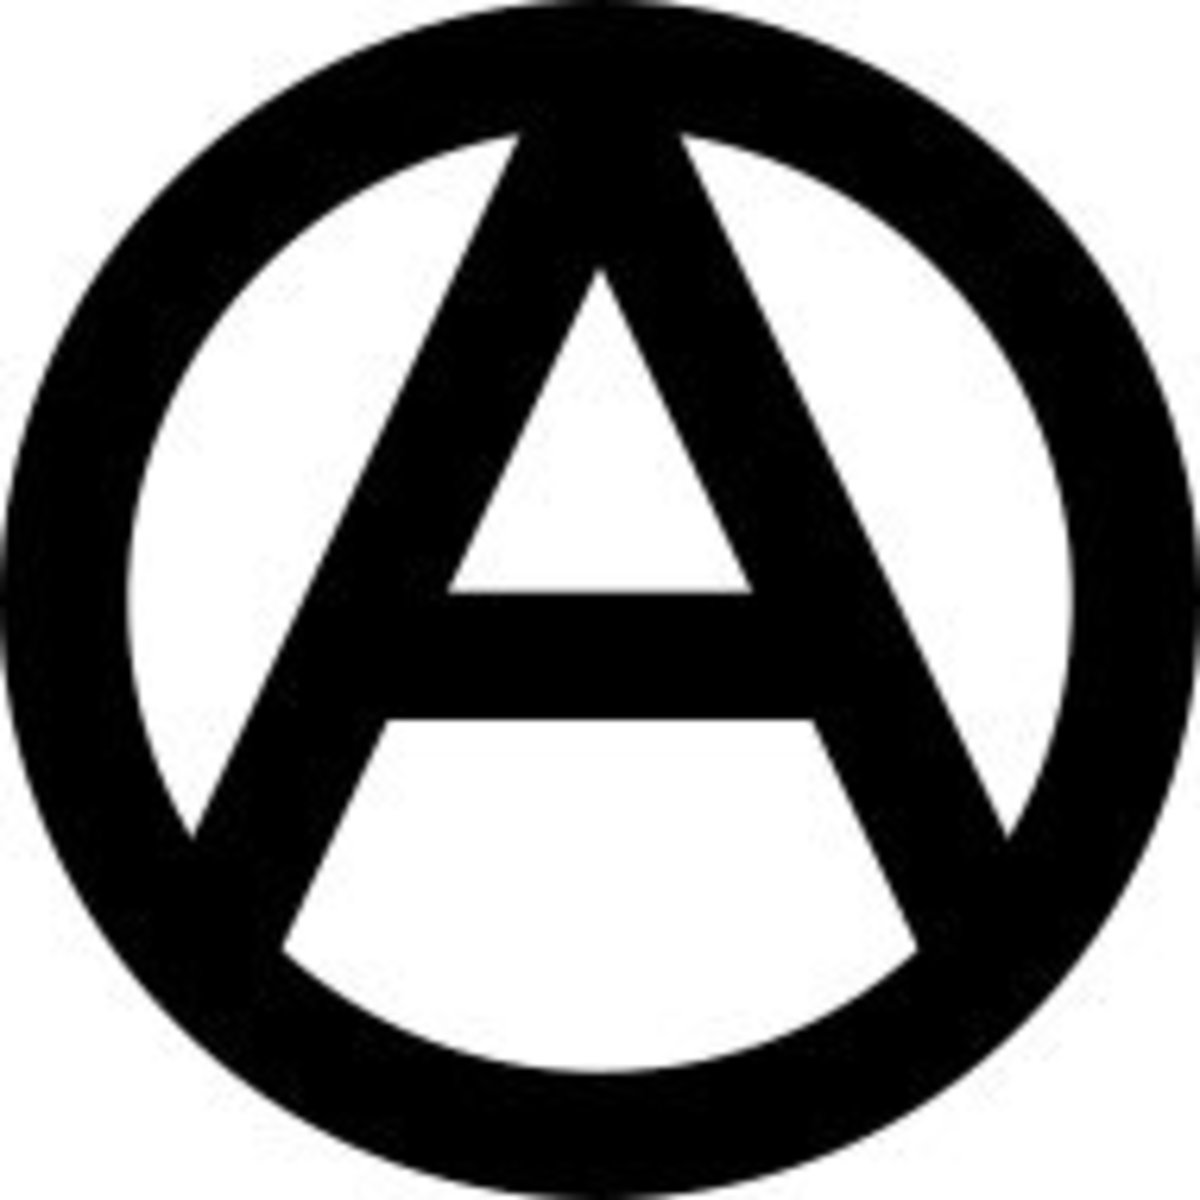 libertarian-symbols